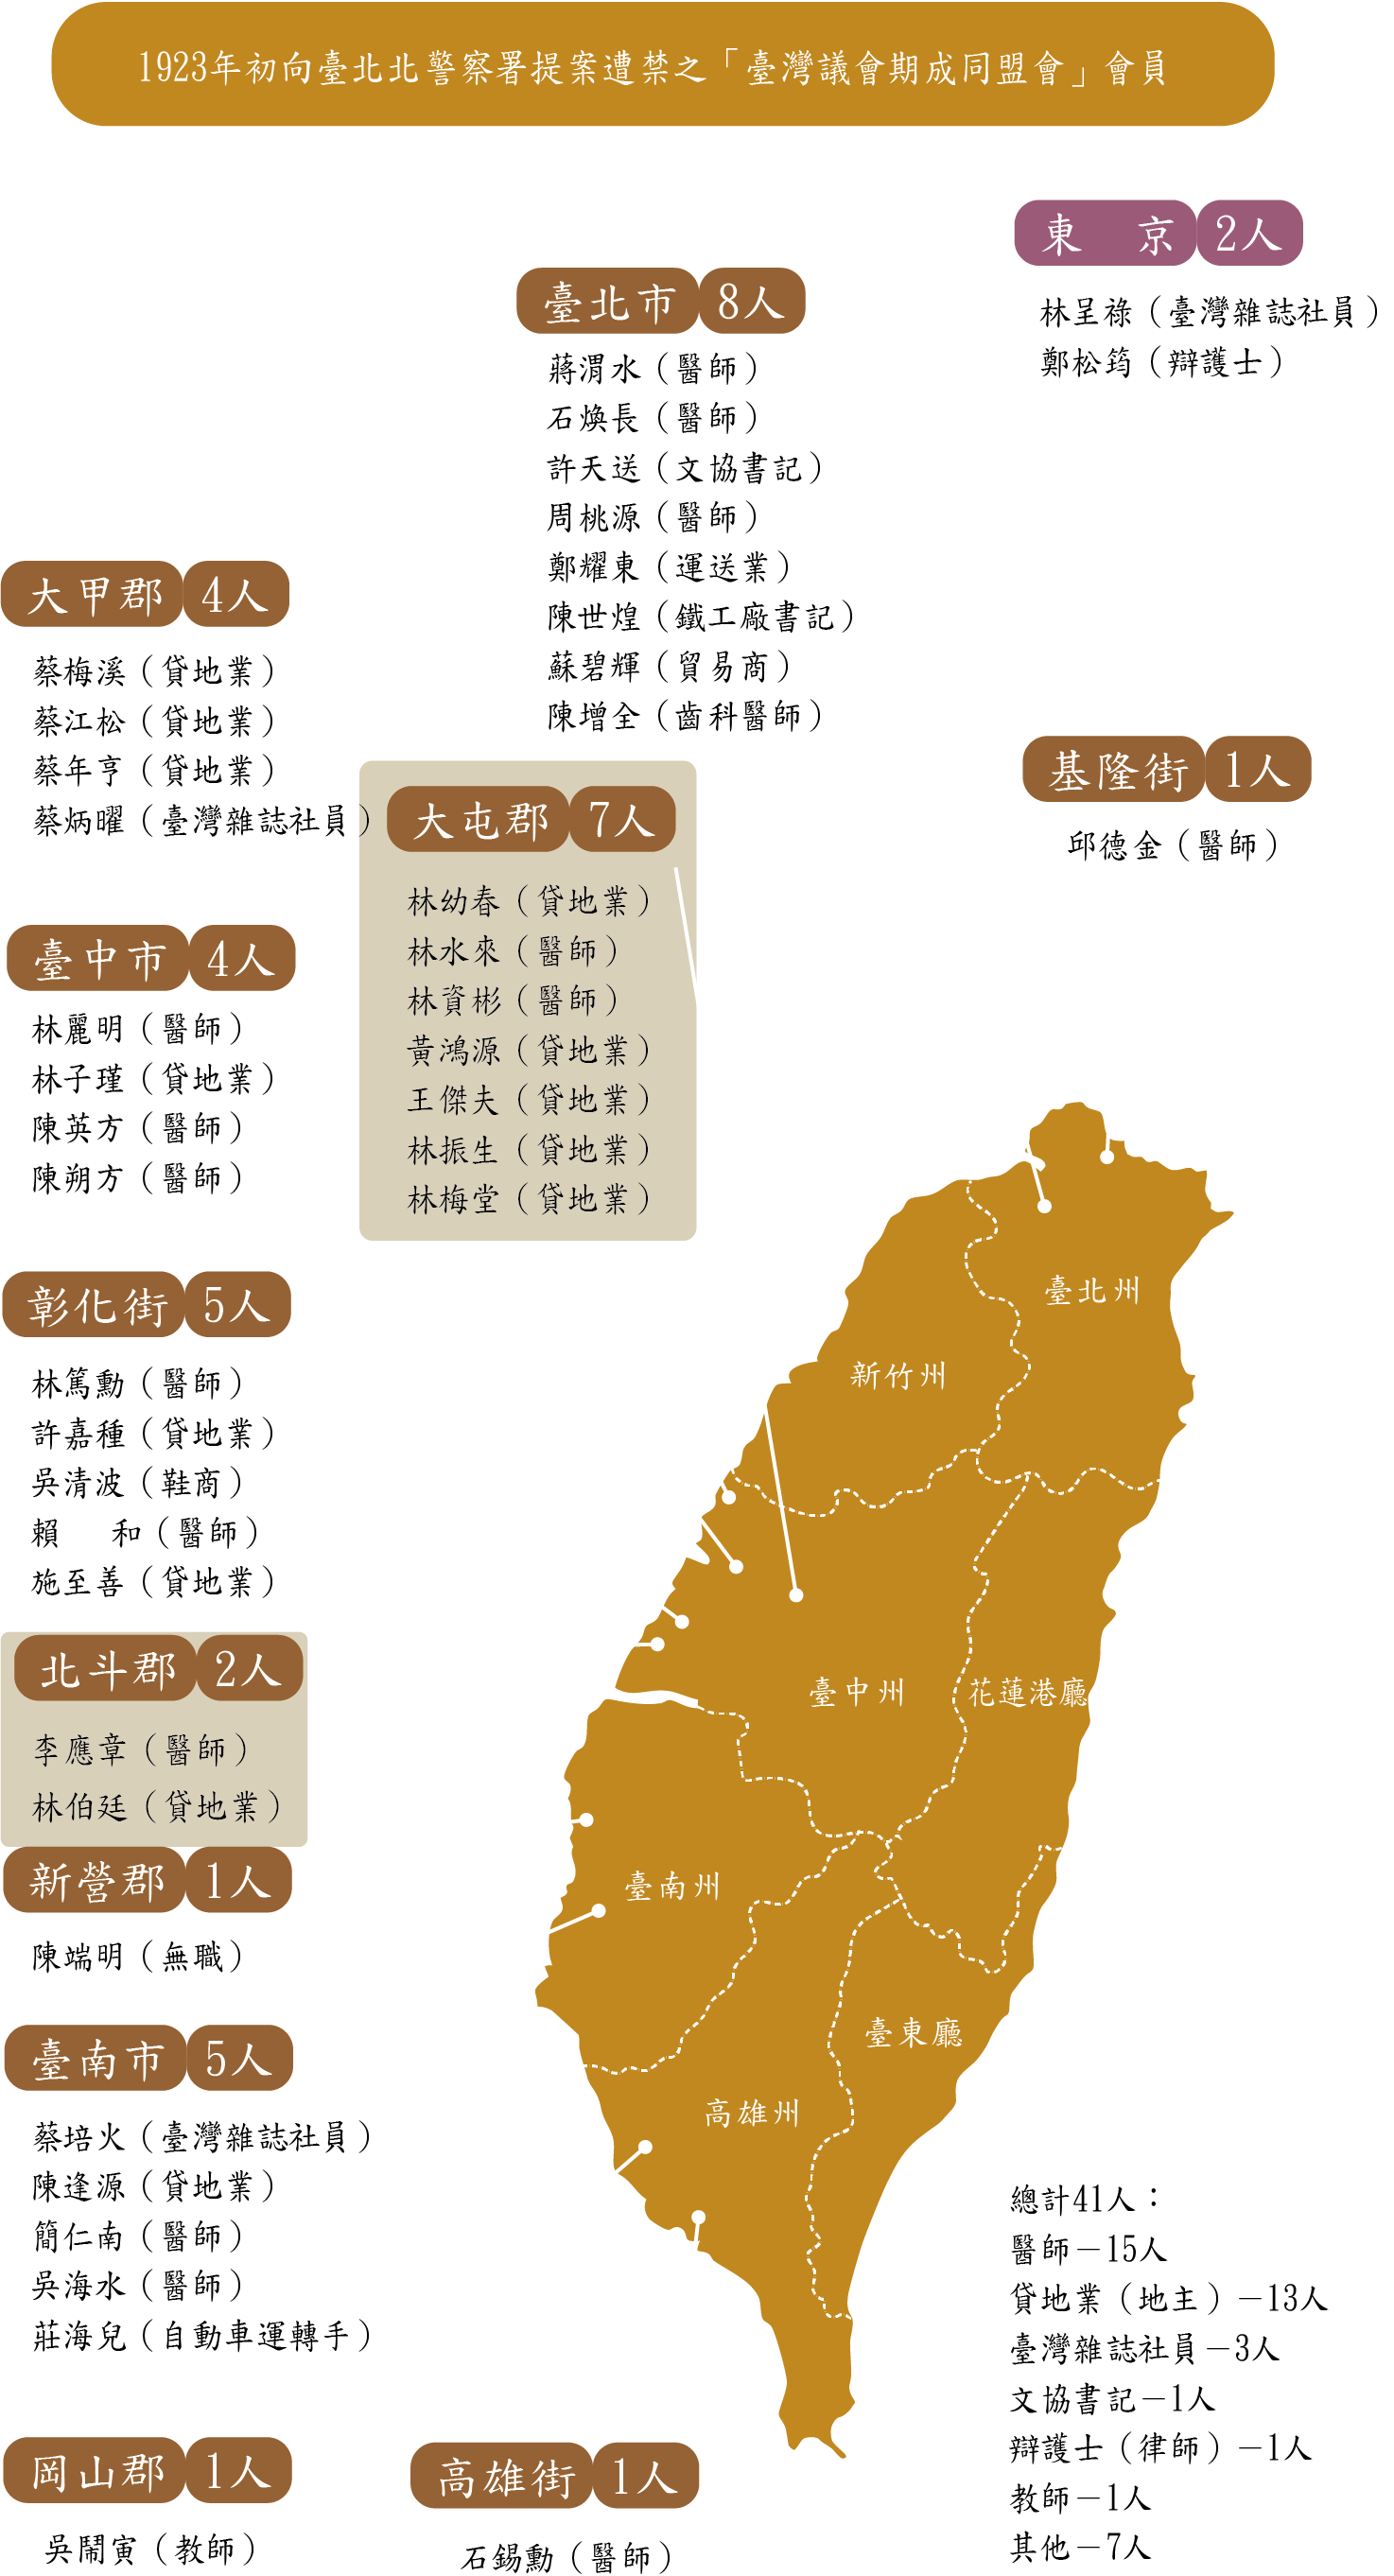 1923年初向臺北北警察署提案遭禁之「臺灣議會期成同盟會」會員